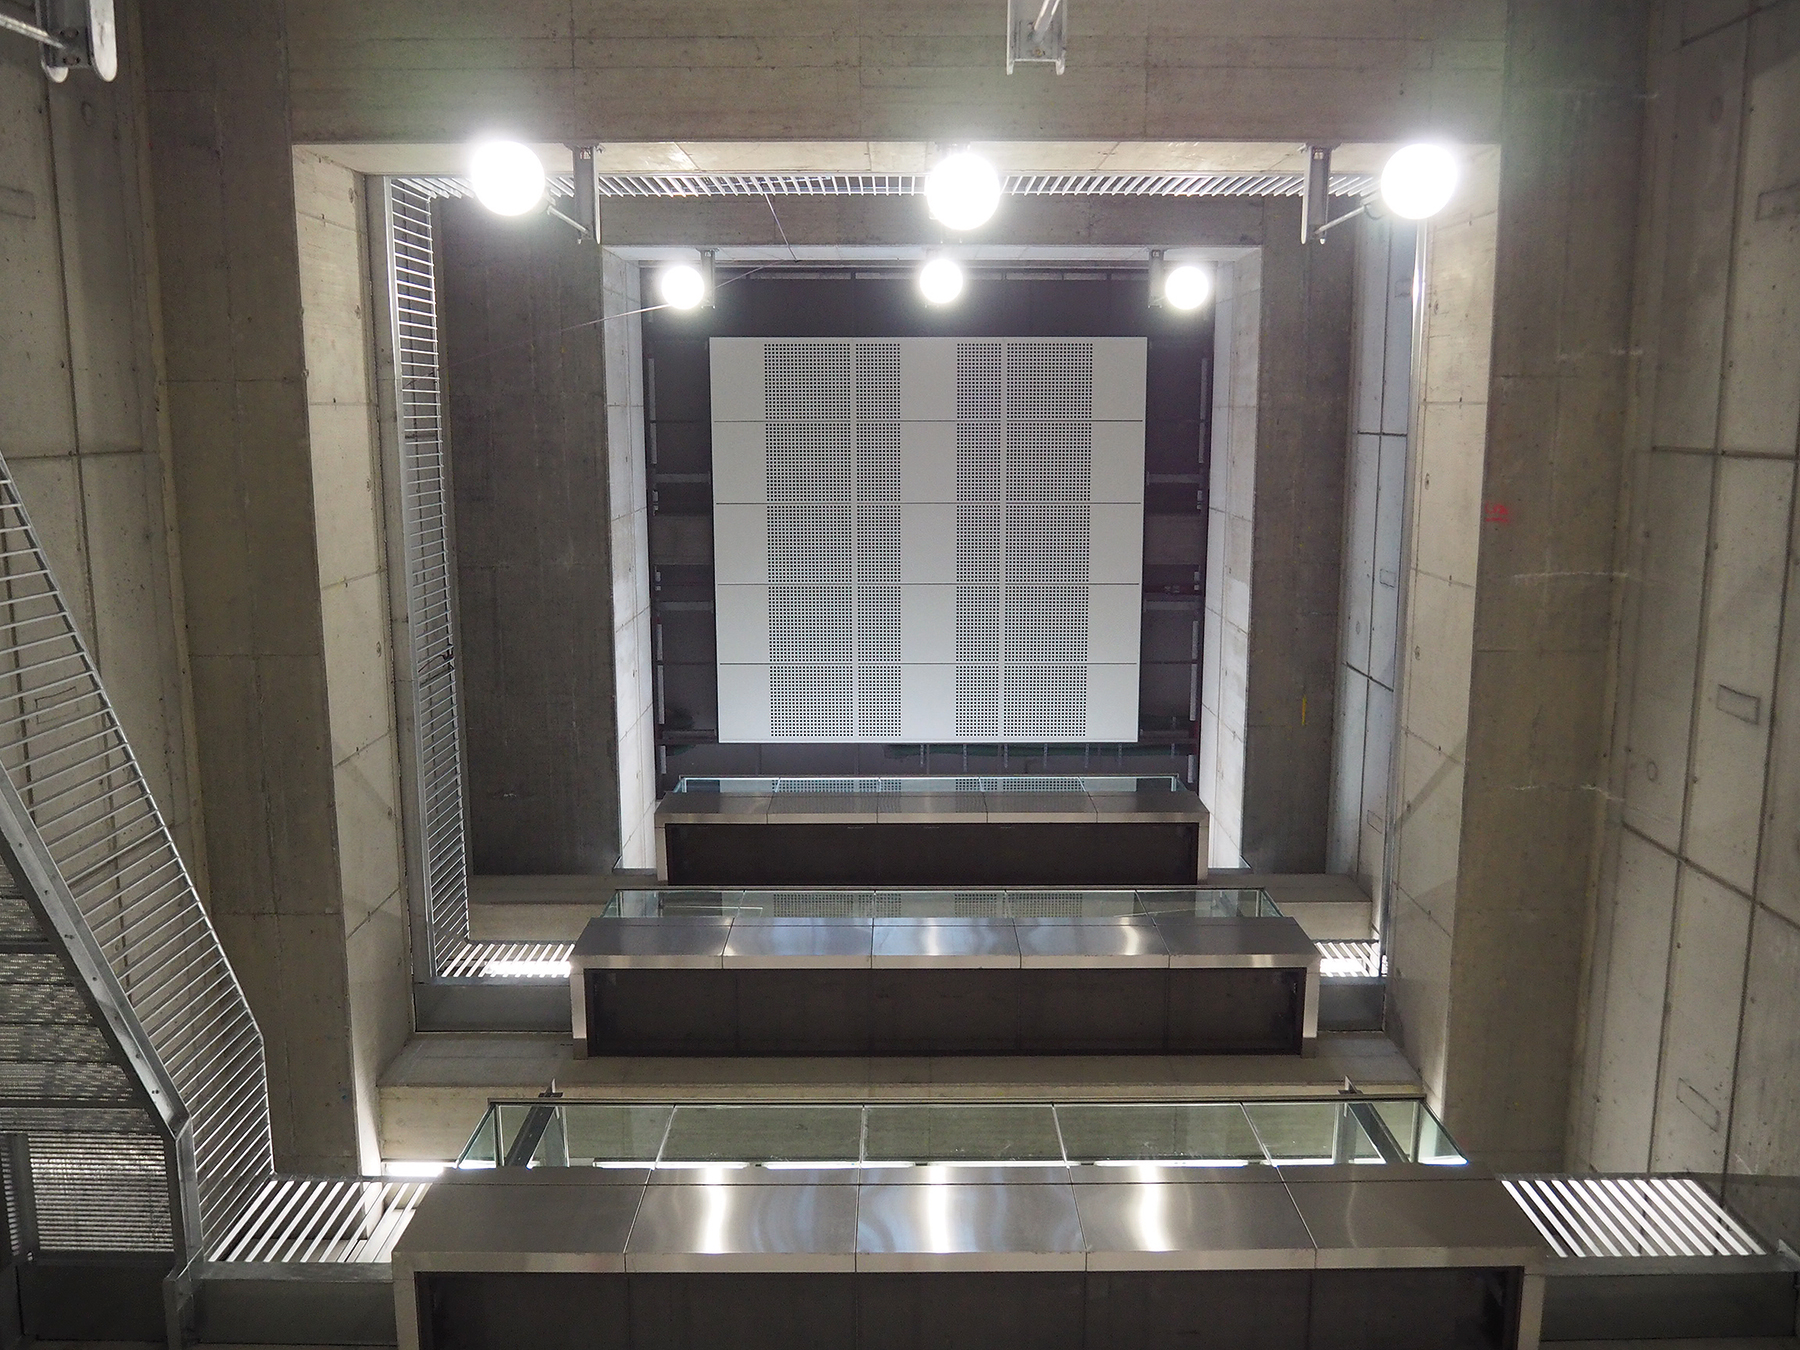 Monumentálna výška priestoru vstupnej šachty pod vestibulom stanice Favoritenstrasse s „balkónmi“ schodiska a trojicou osobných výťahov